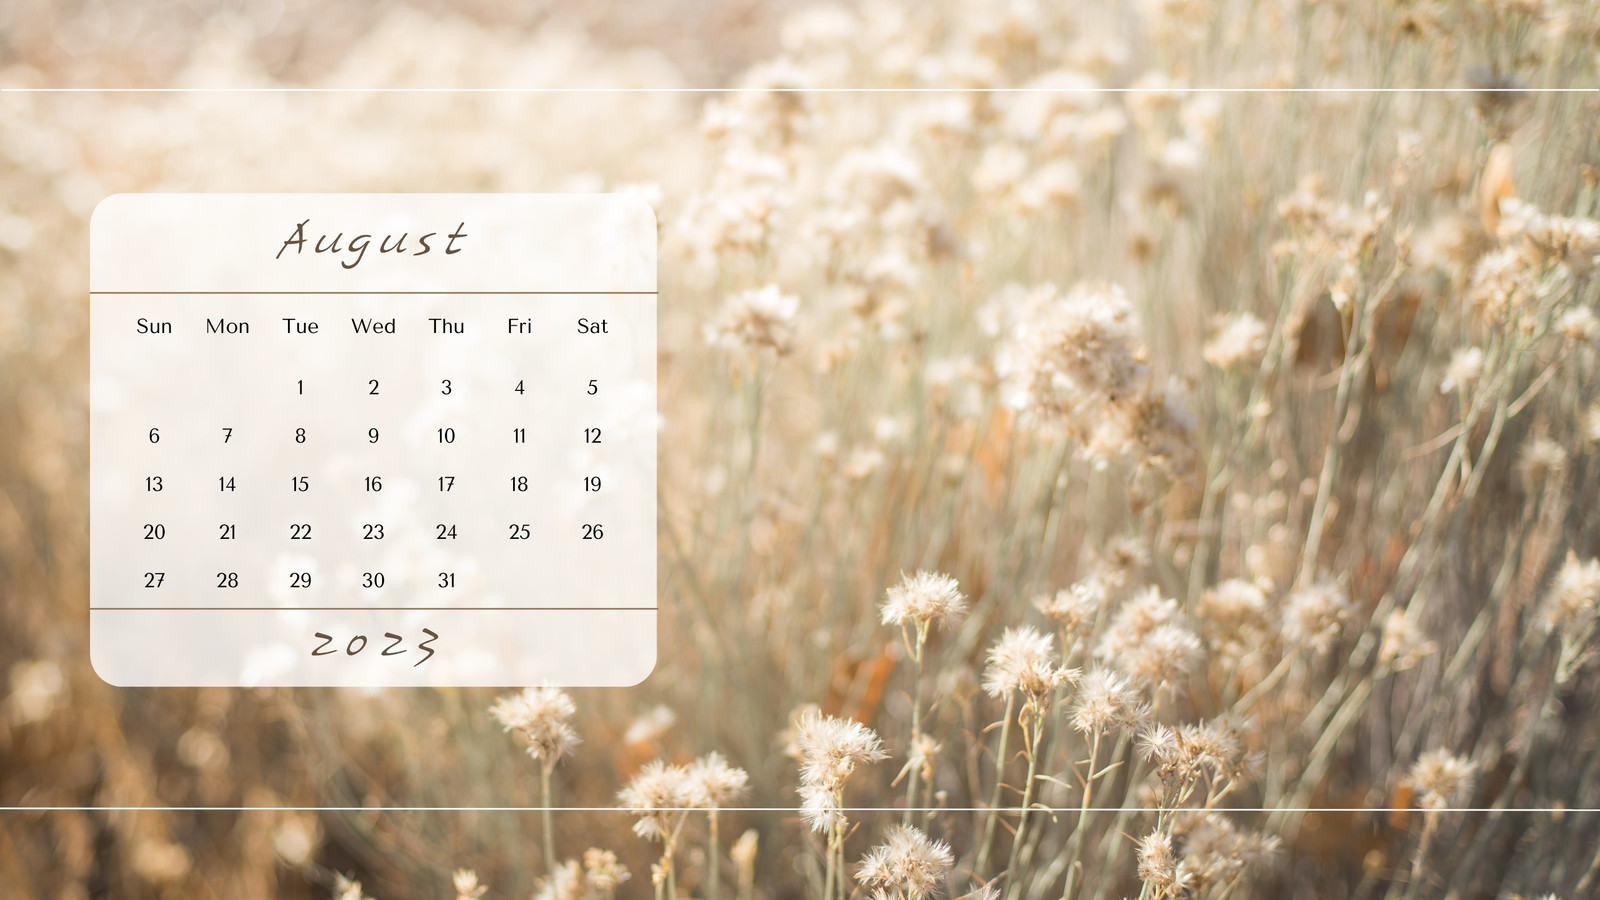 August 2023 Desktop Wallpaper Calendar  CalendarLabs